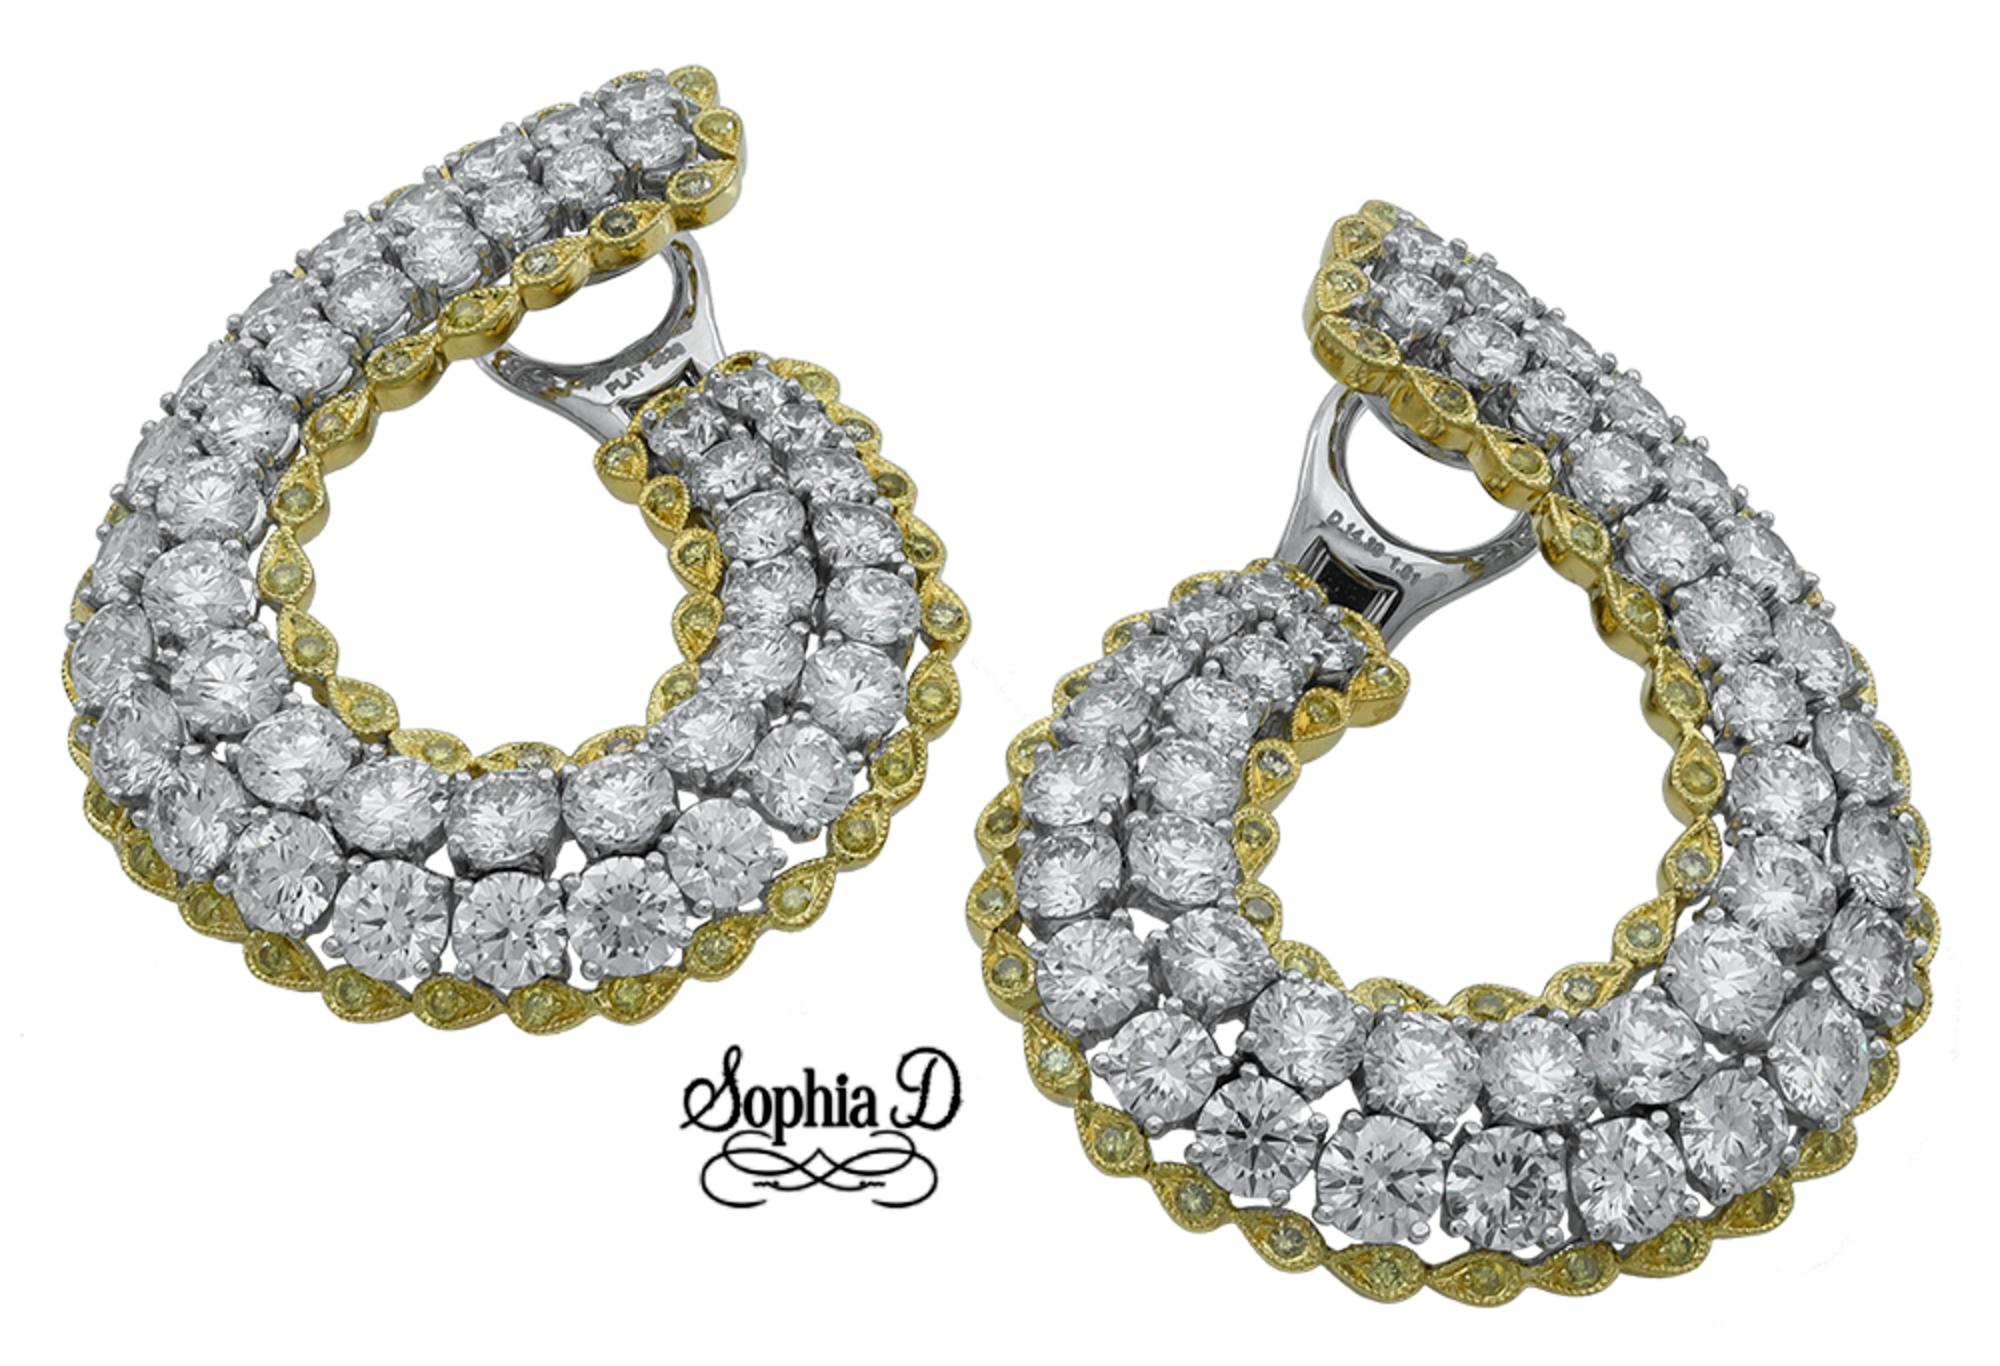 Diese von Sophia D entworfenen Ohrringe aus Platin mit Diamanten und gelben Saphiren sind mit runden Diamanten von 14,39 Karat und gelben Saphiren von 1,01 Karat besetzt.

Sophia D von Joseph Dardashti LTD ist seit 35 Jahren weltweit bekannt und